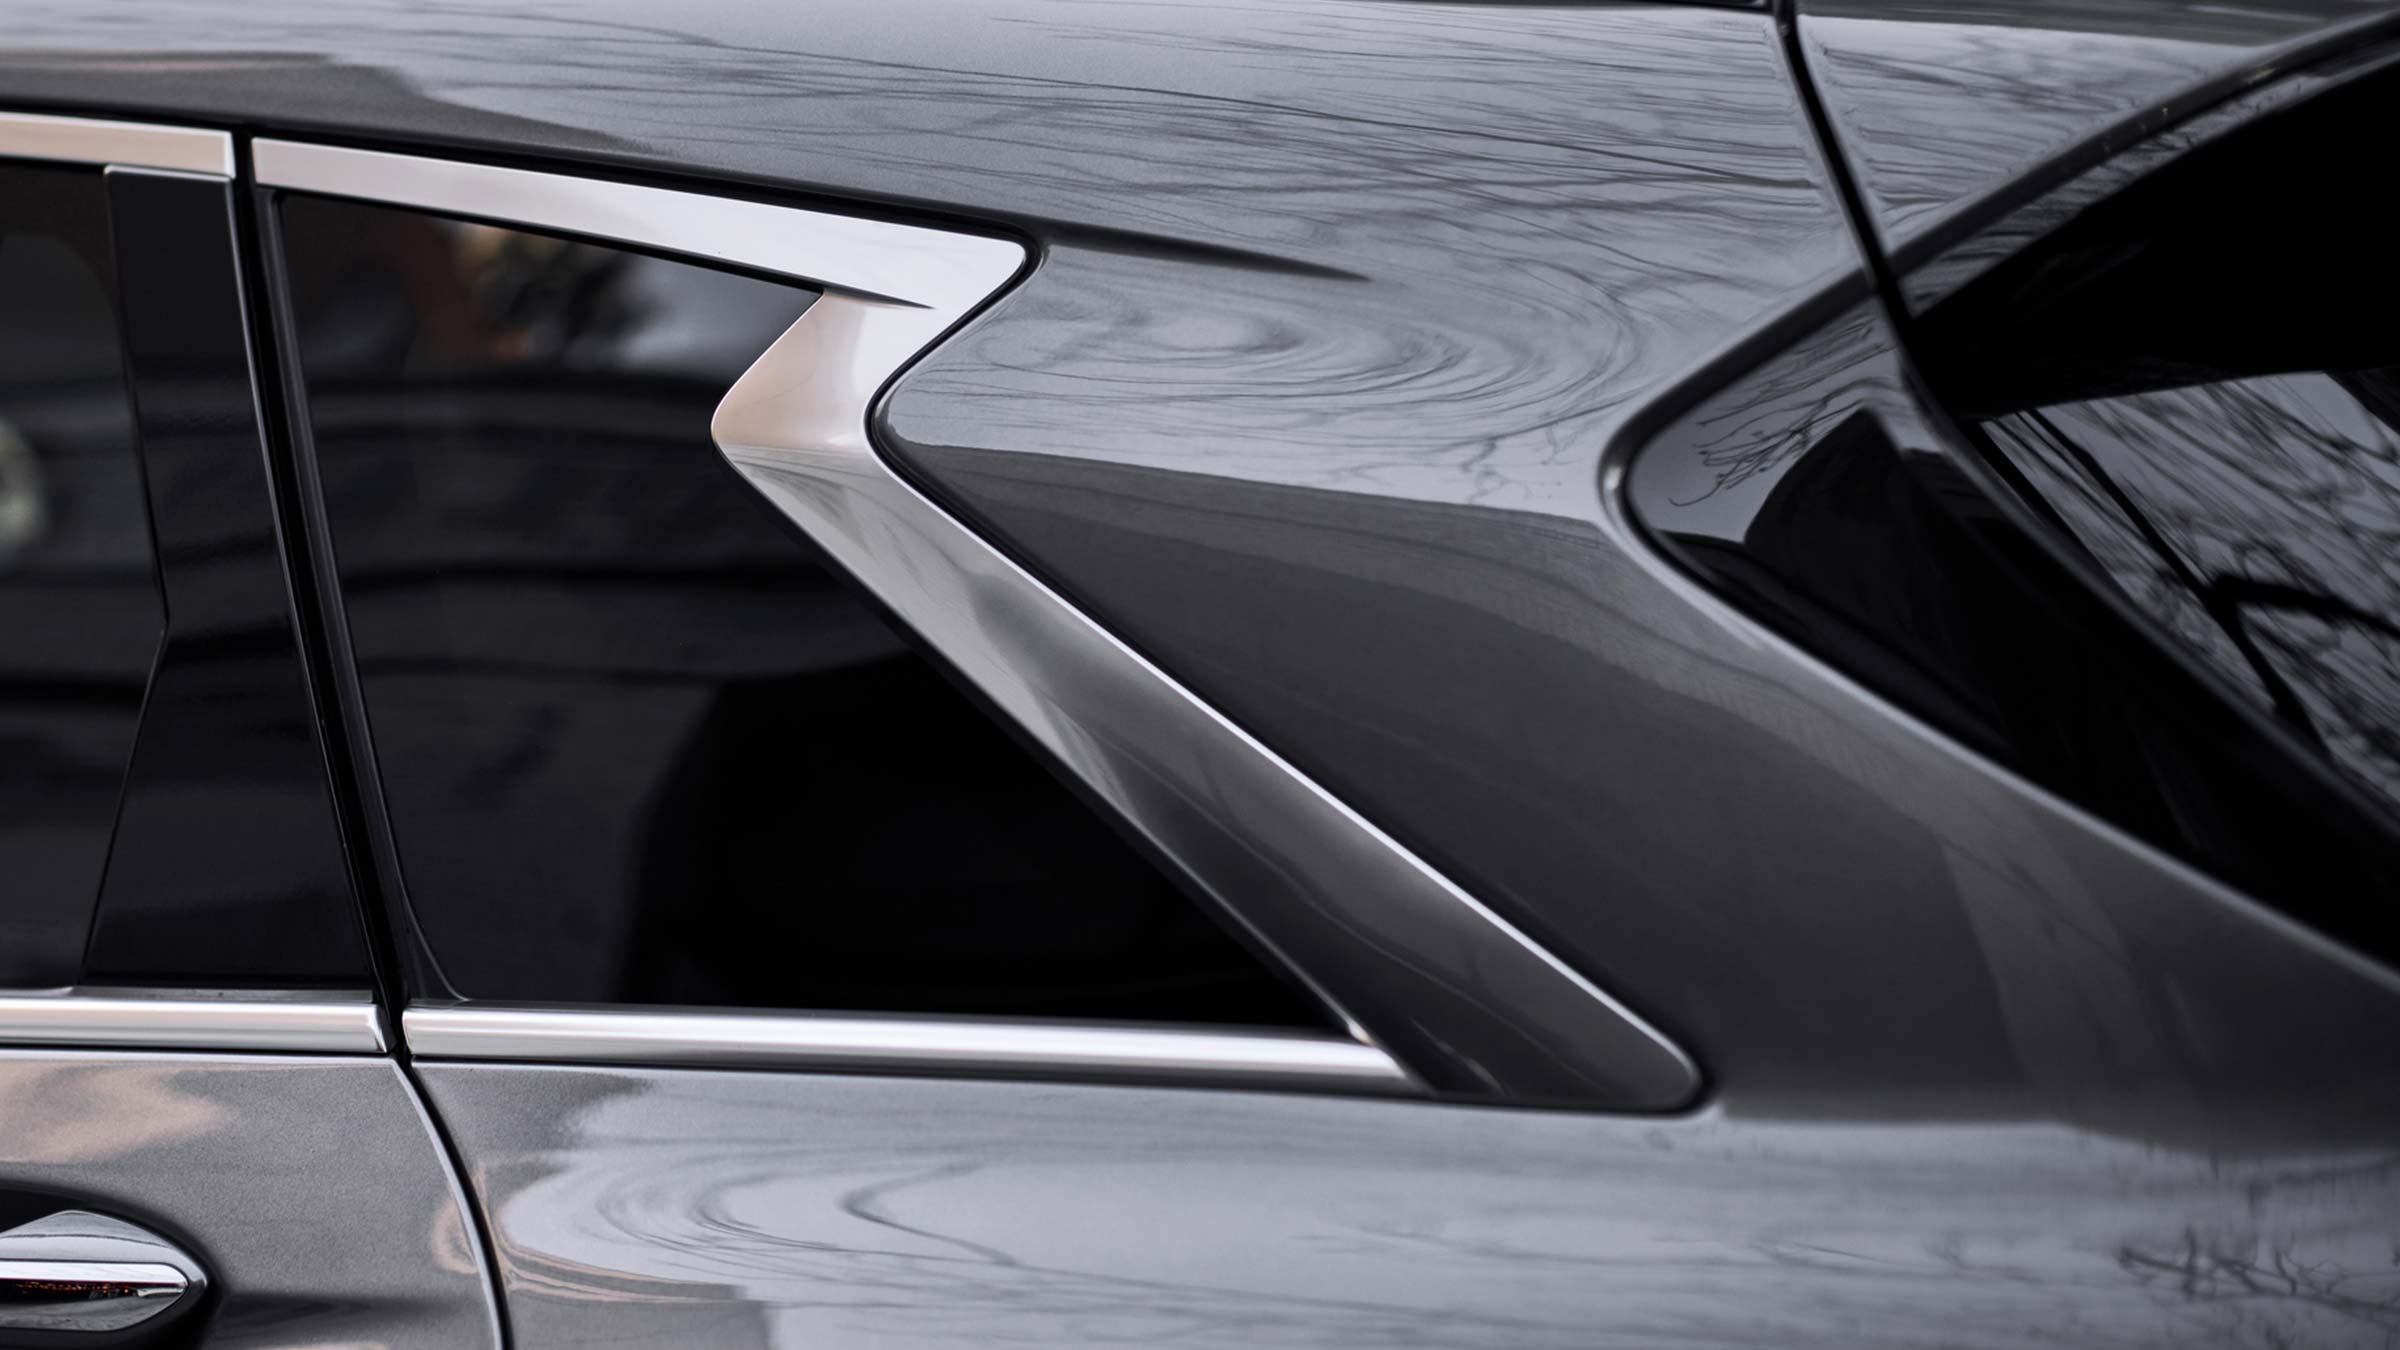 A Close-up of the 2022 INFINITI QX50 SUV exterior design.